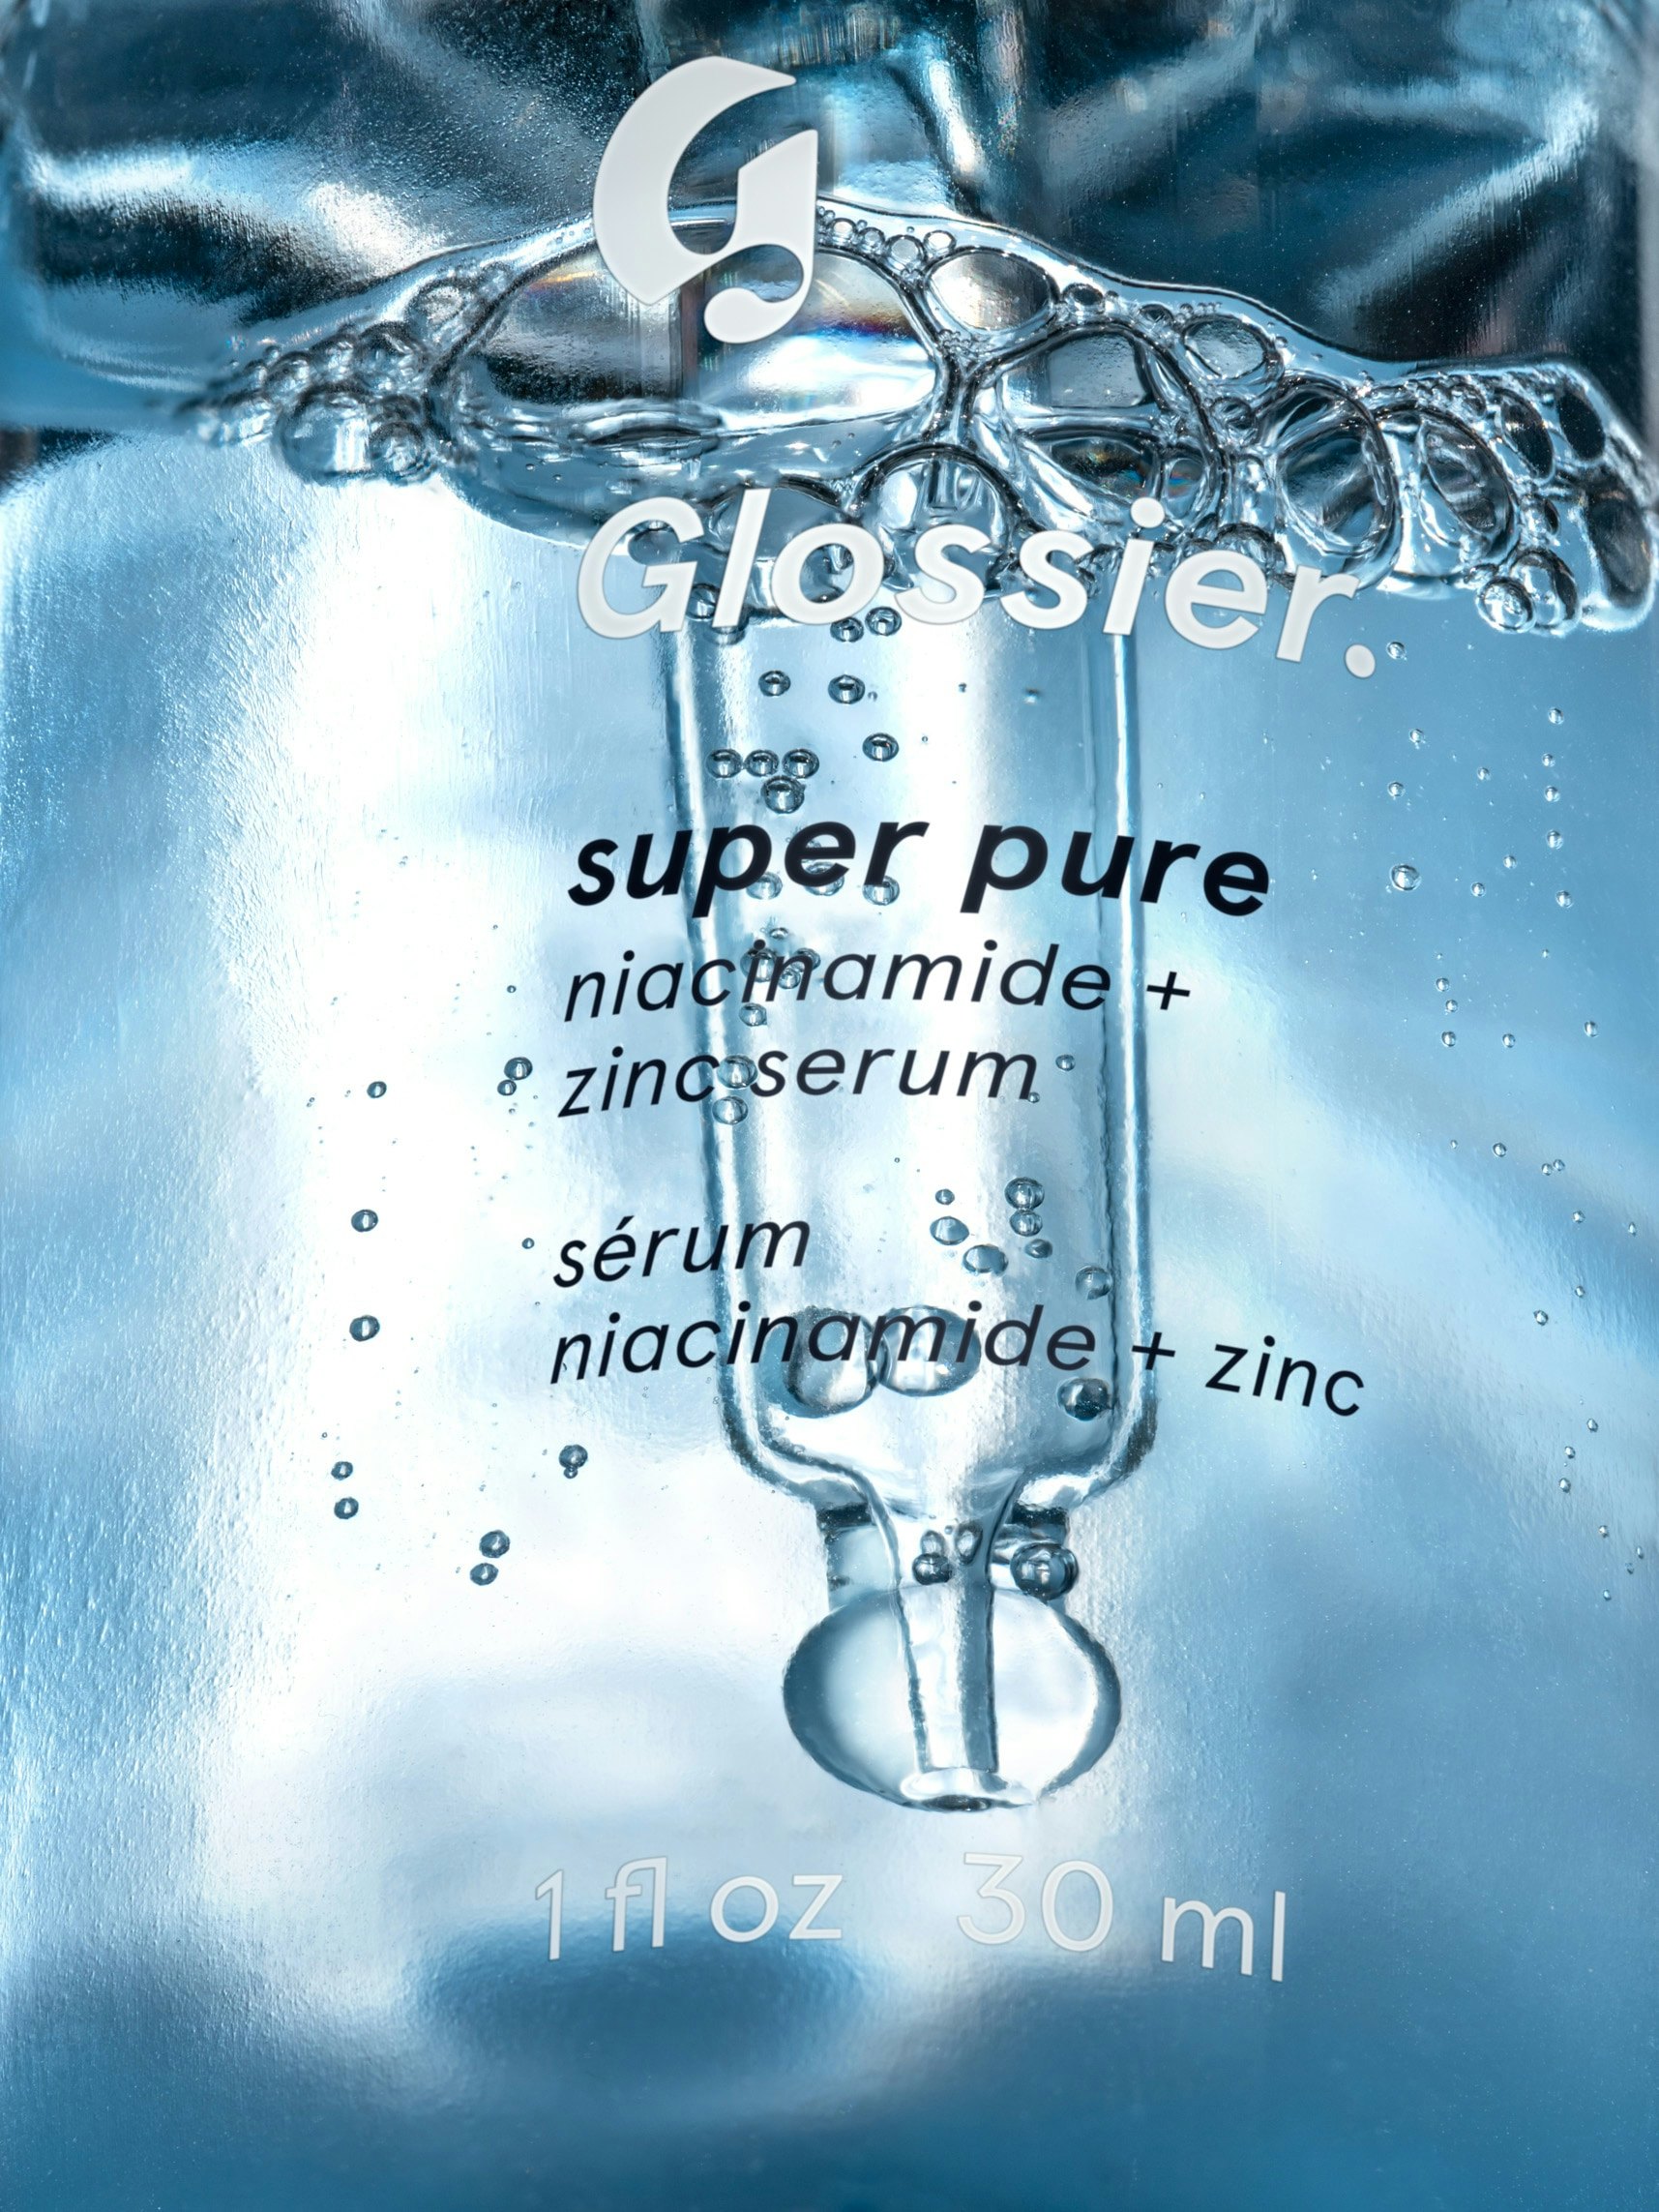 Super Pure – Glossier